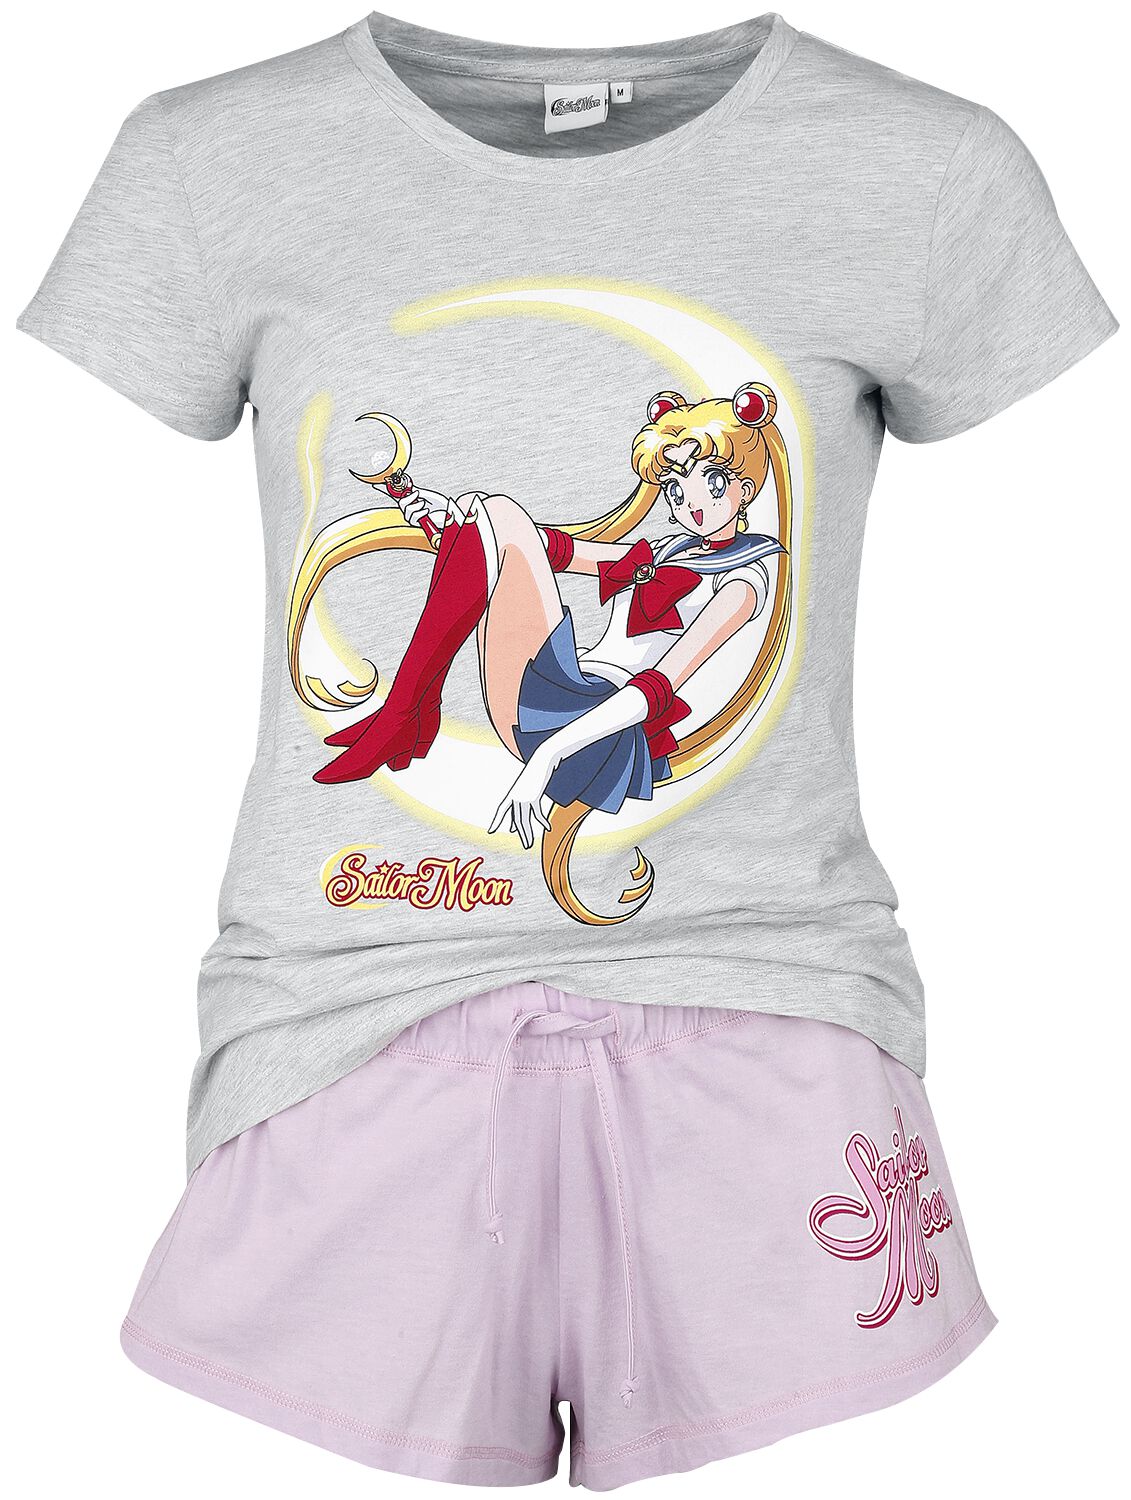 Pyjama de Sailor Moon - S à 3XL - pour Femme - multicolore